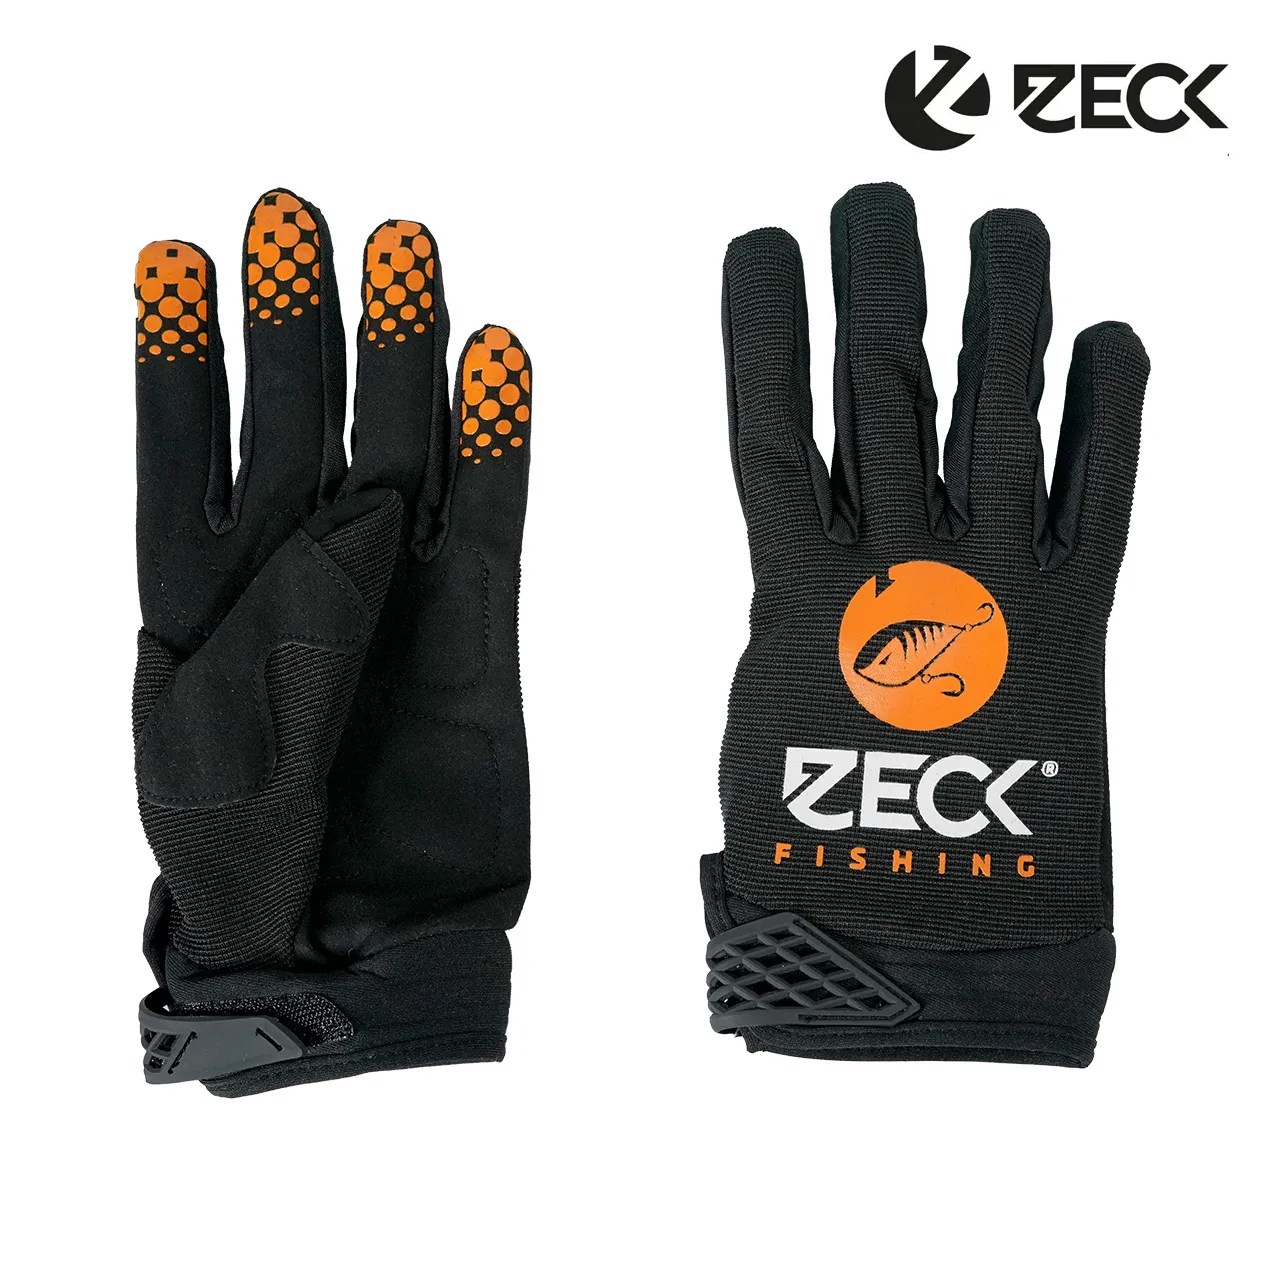 Zeck Fishing Predator Gloves Paar